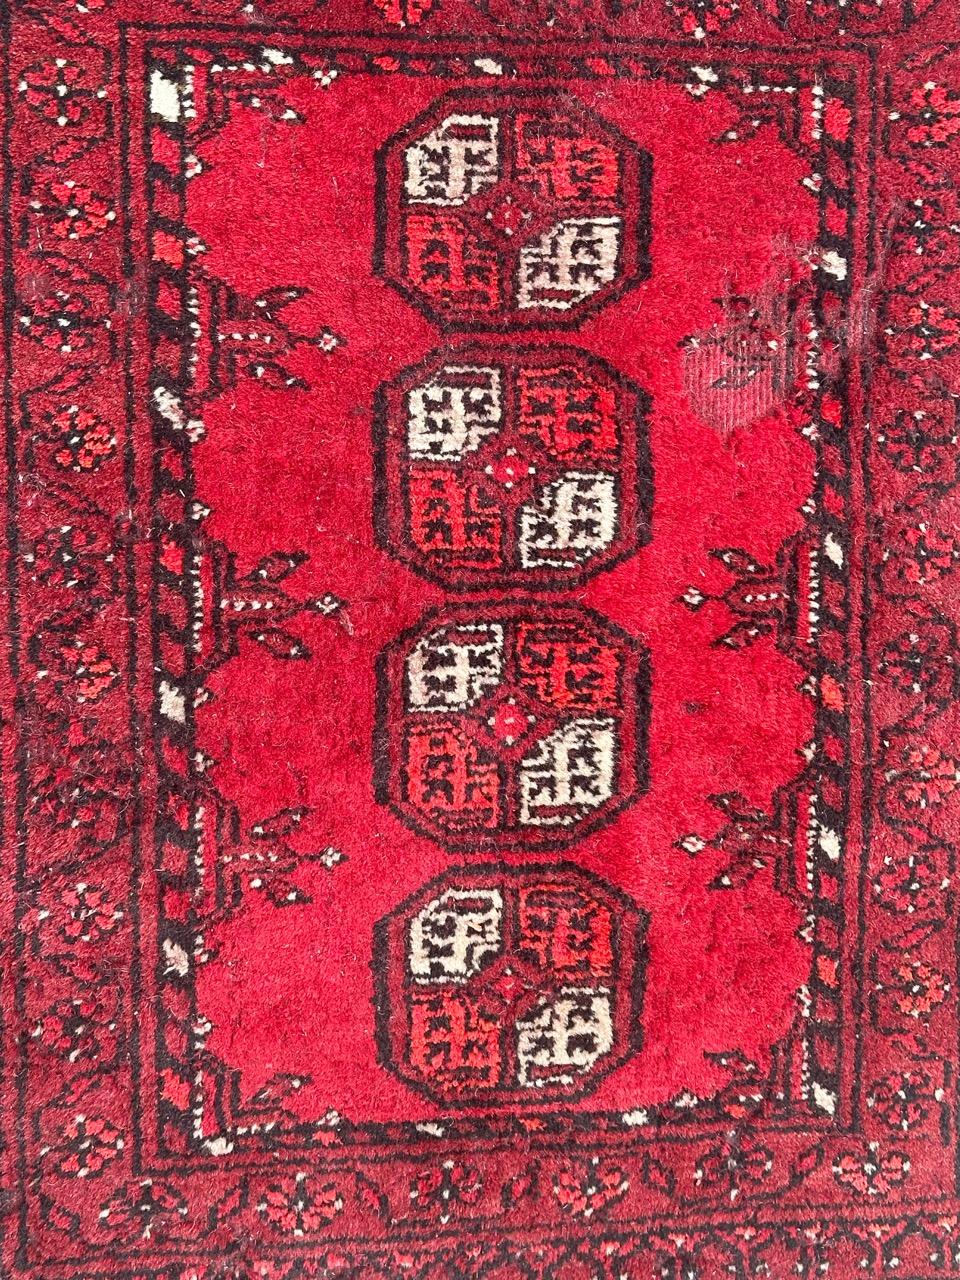 Hübscher kleiner vintage turkmenischer Teppich mit geometrischem Bokhara-Muster und schönen Farben in rot, blau und weiß, einige Gebrauchsspuren, komplett handgeknüpft mit Wolle auf Wollbasis 

✨✨✨
